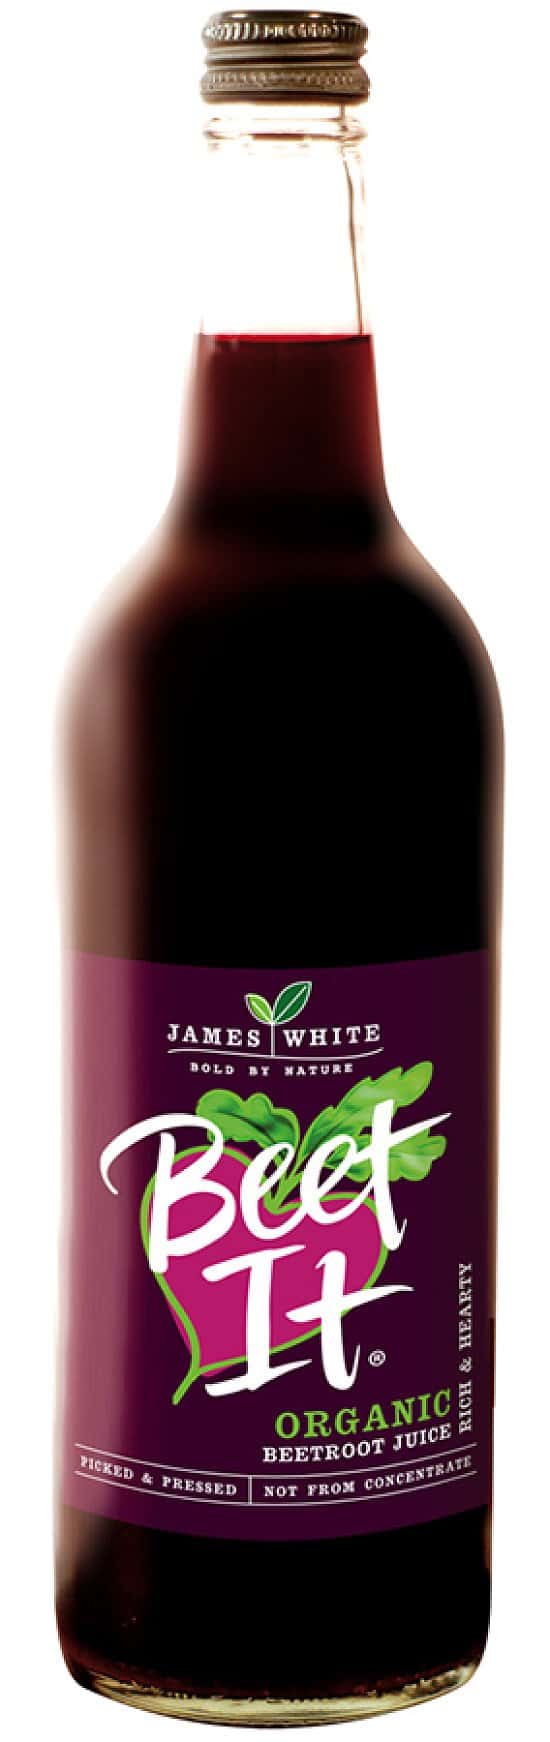 James White Beet It Organic Beetroot Juice - 750ml: £3.09!